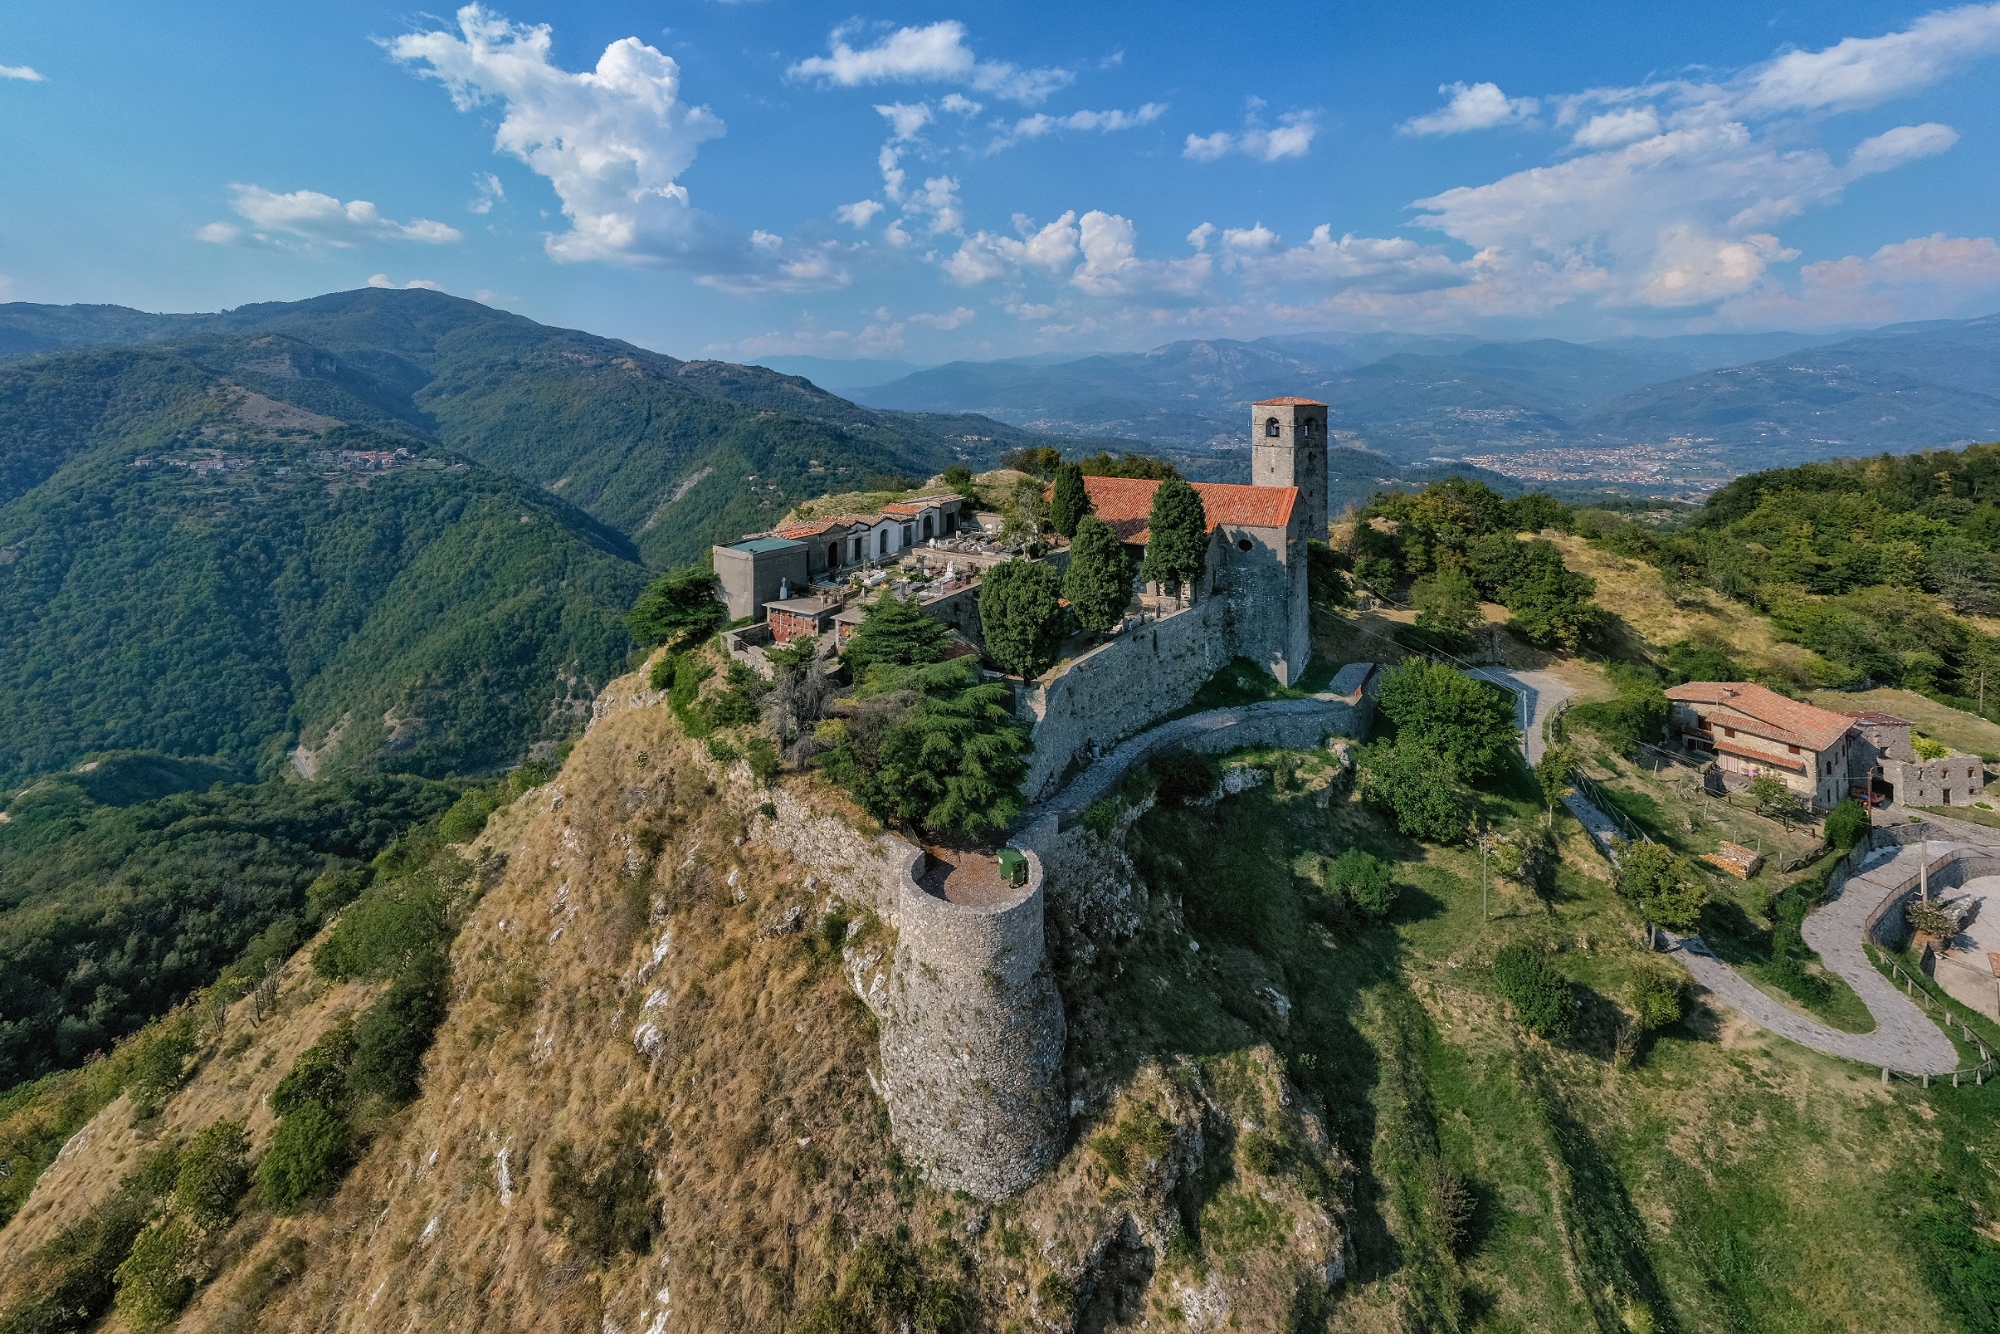 The Rocca di Sassi of Molazzana